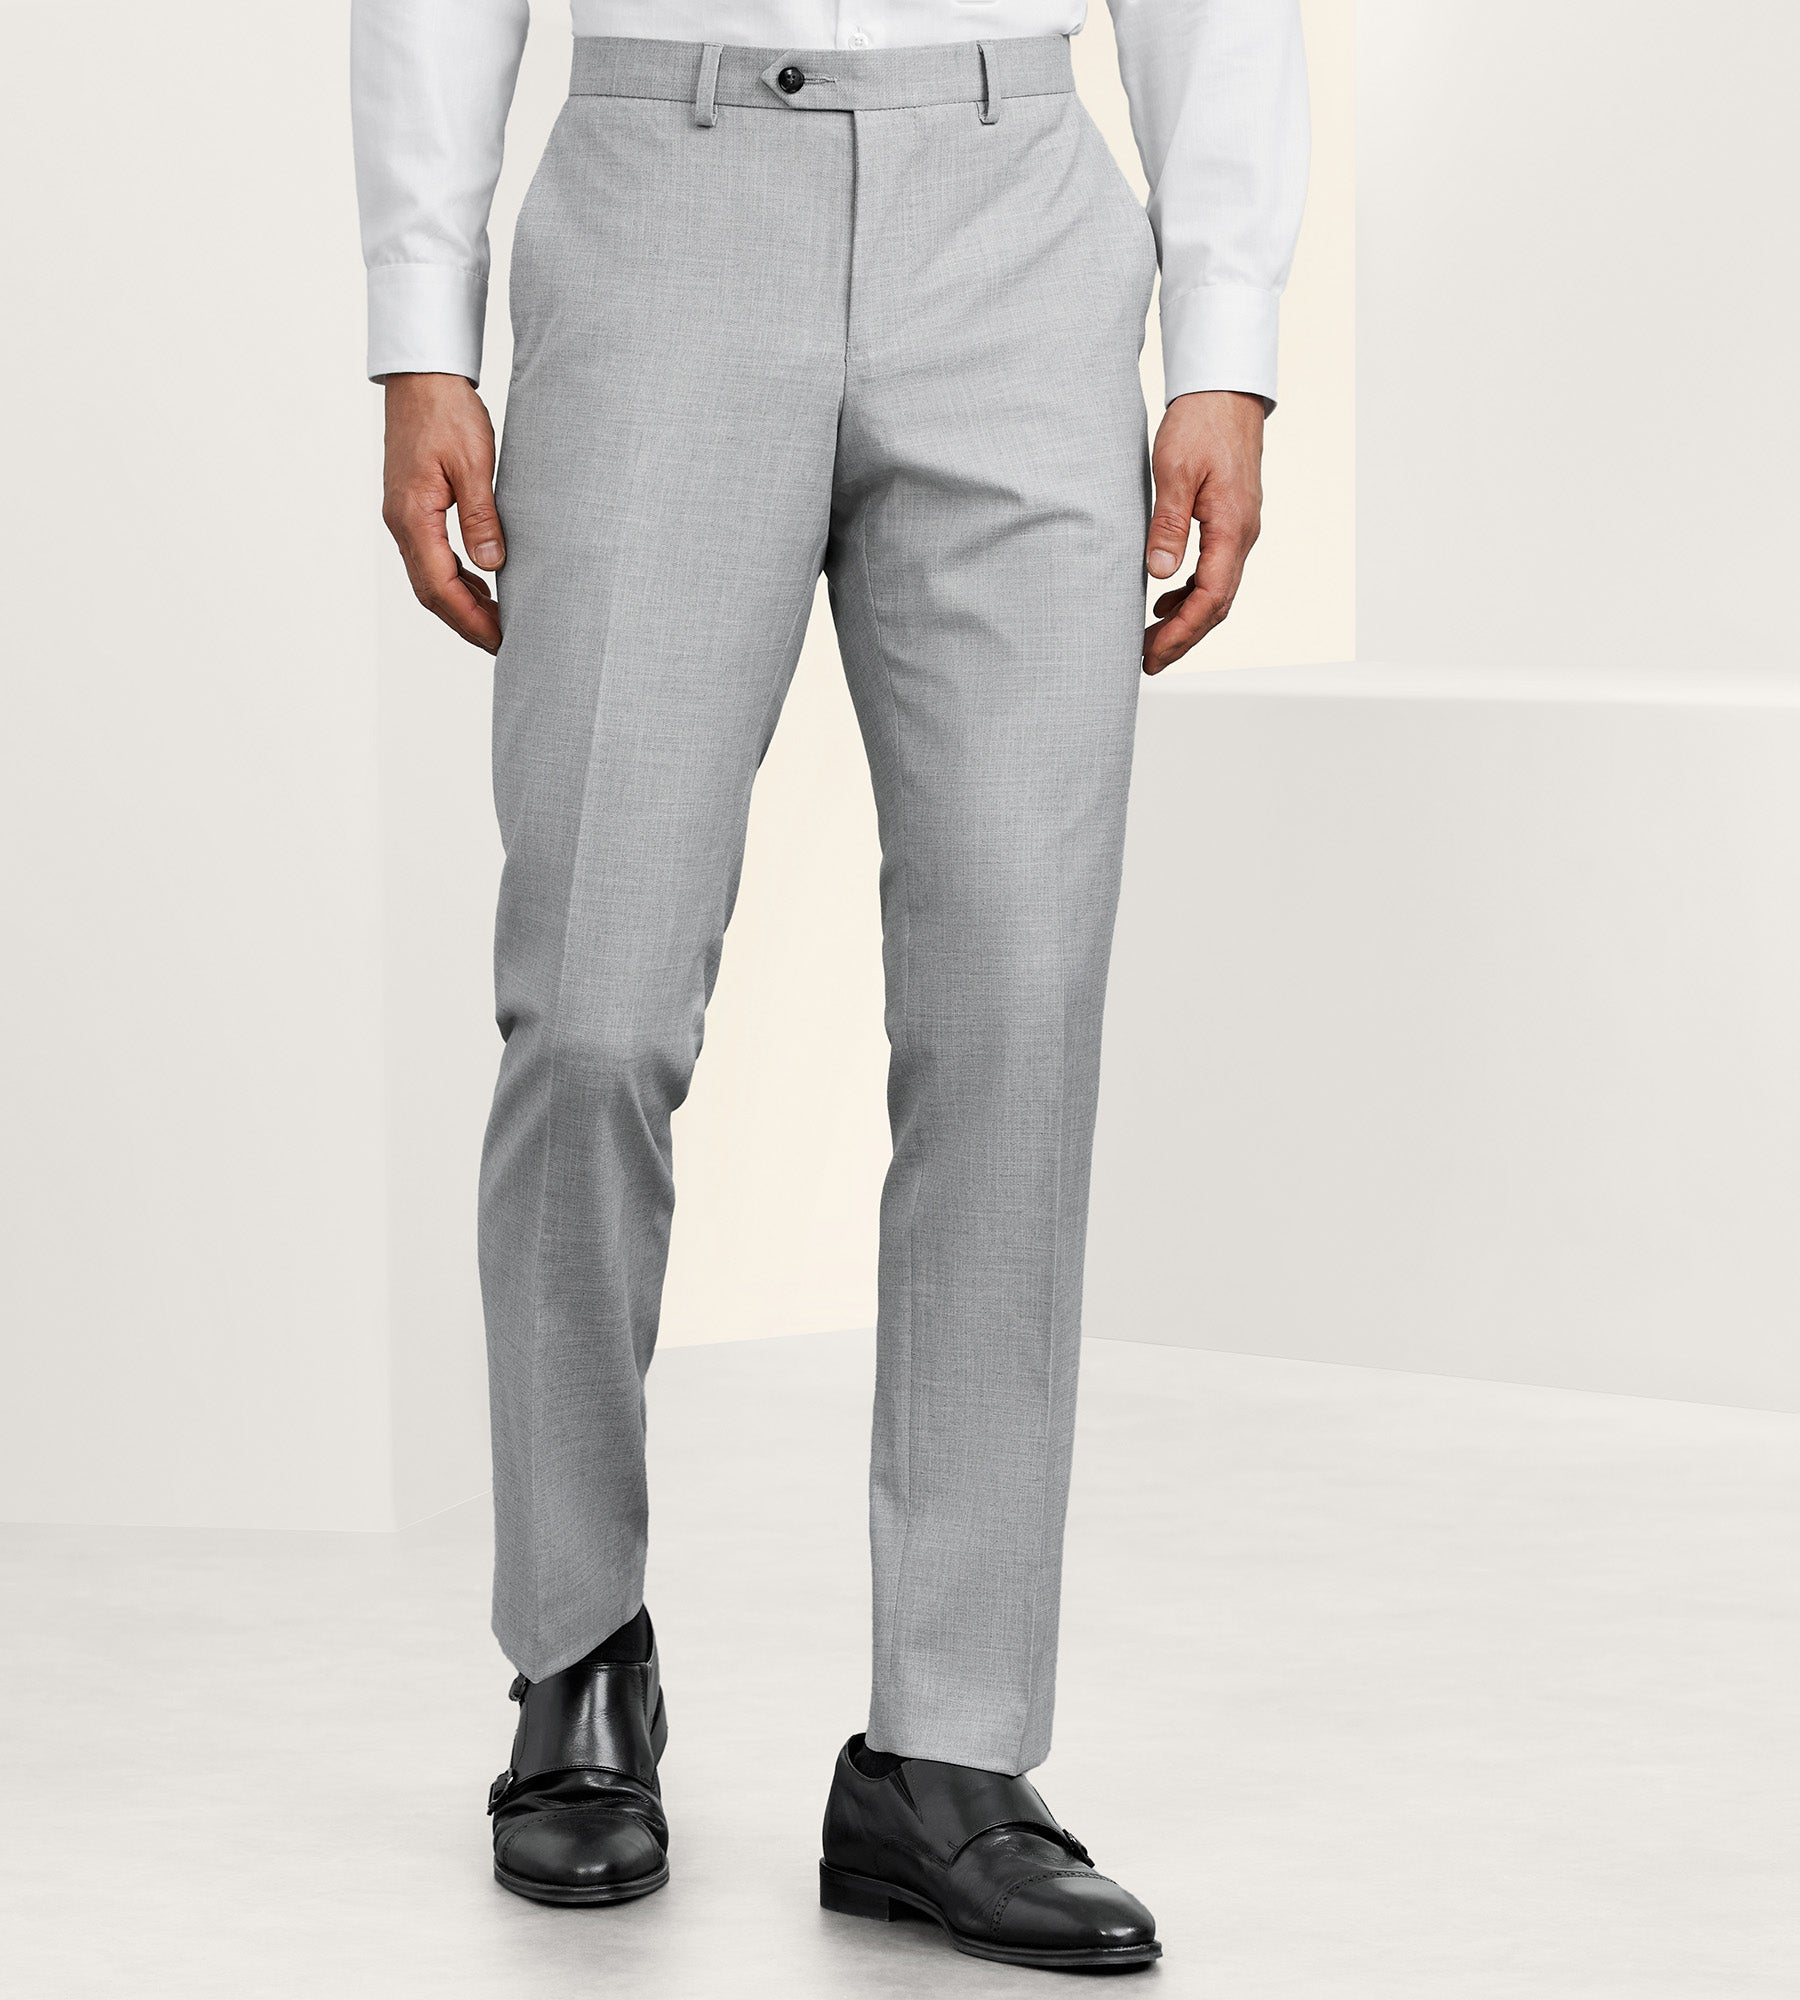 Light Grey Suit Prom Look – Tip Top